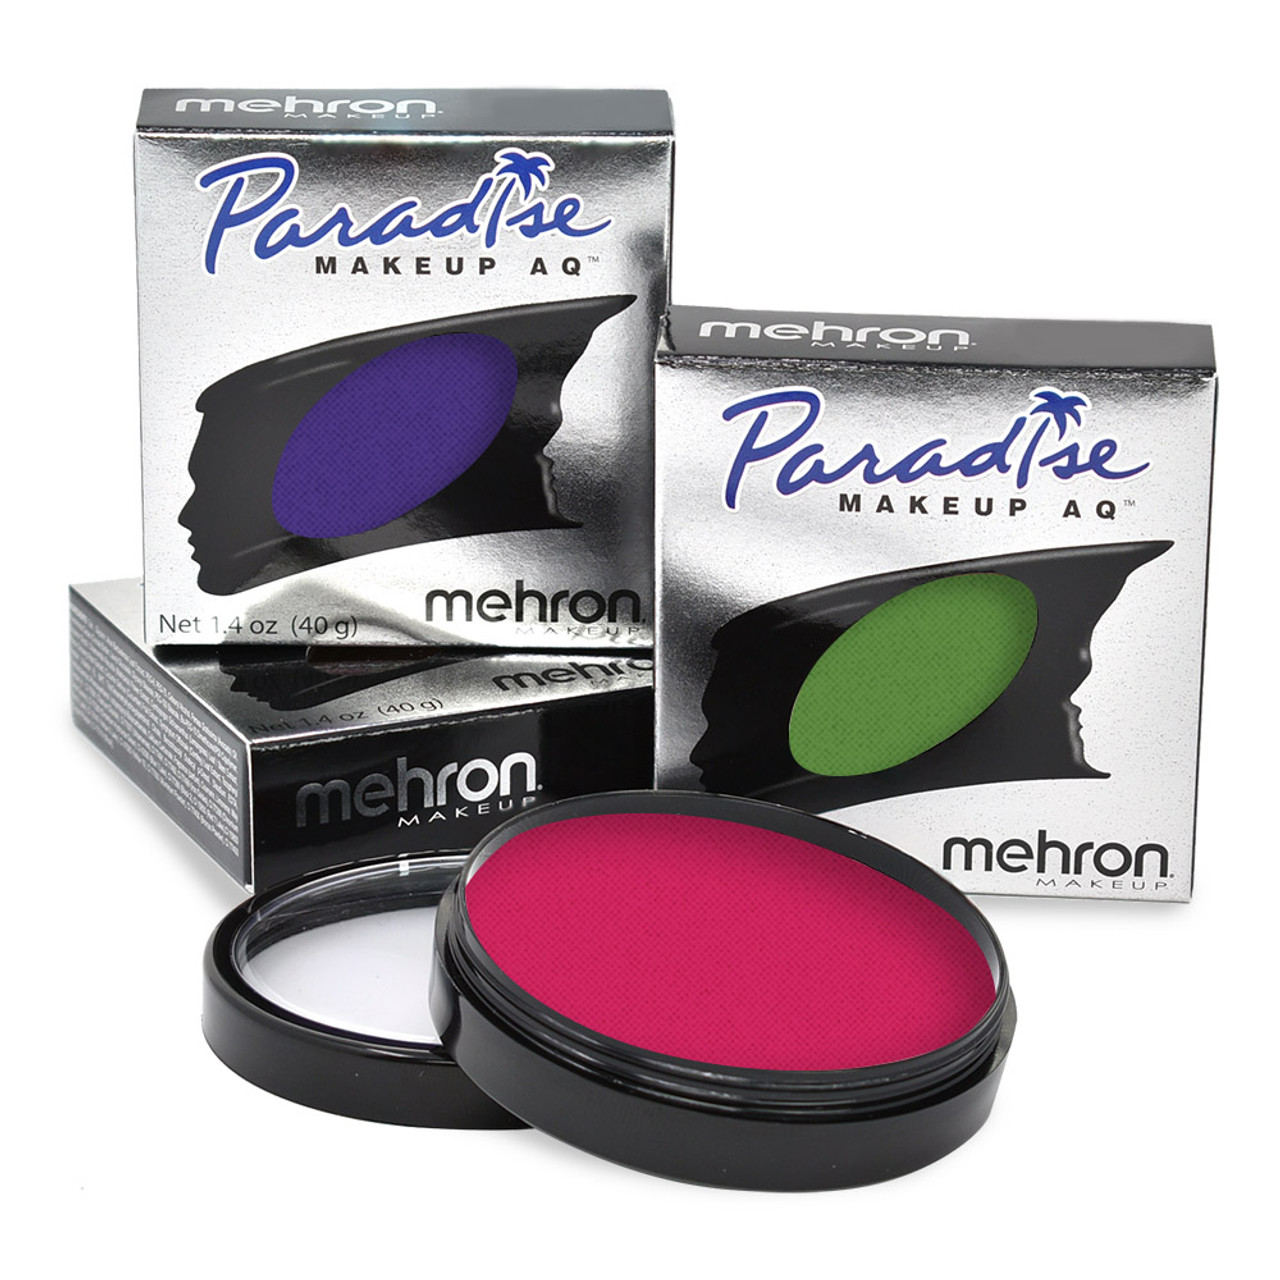 Mehron Makeup Paradise Makeup AQ Face & Body Paint 1.4 oz Red